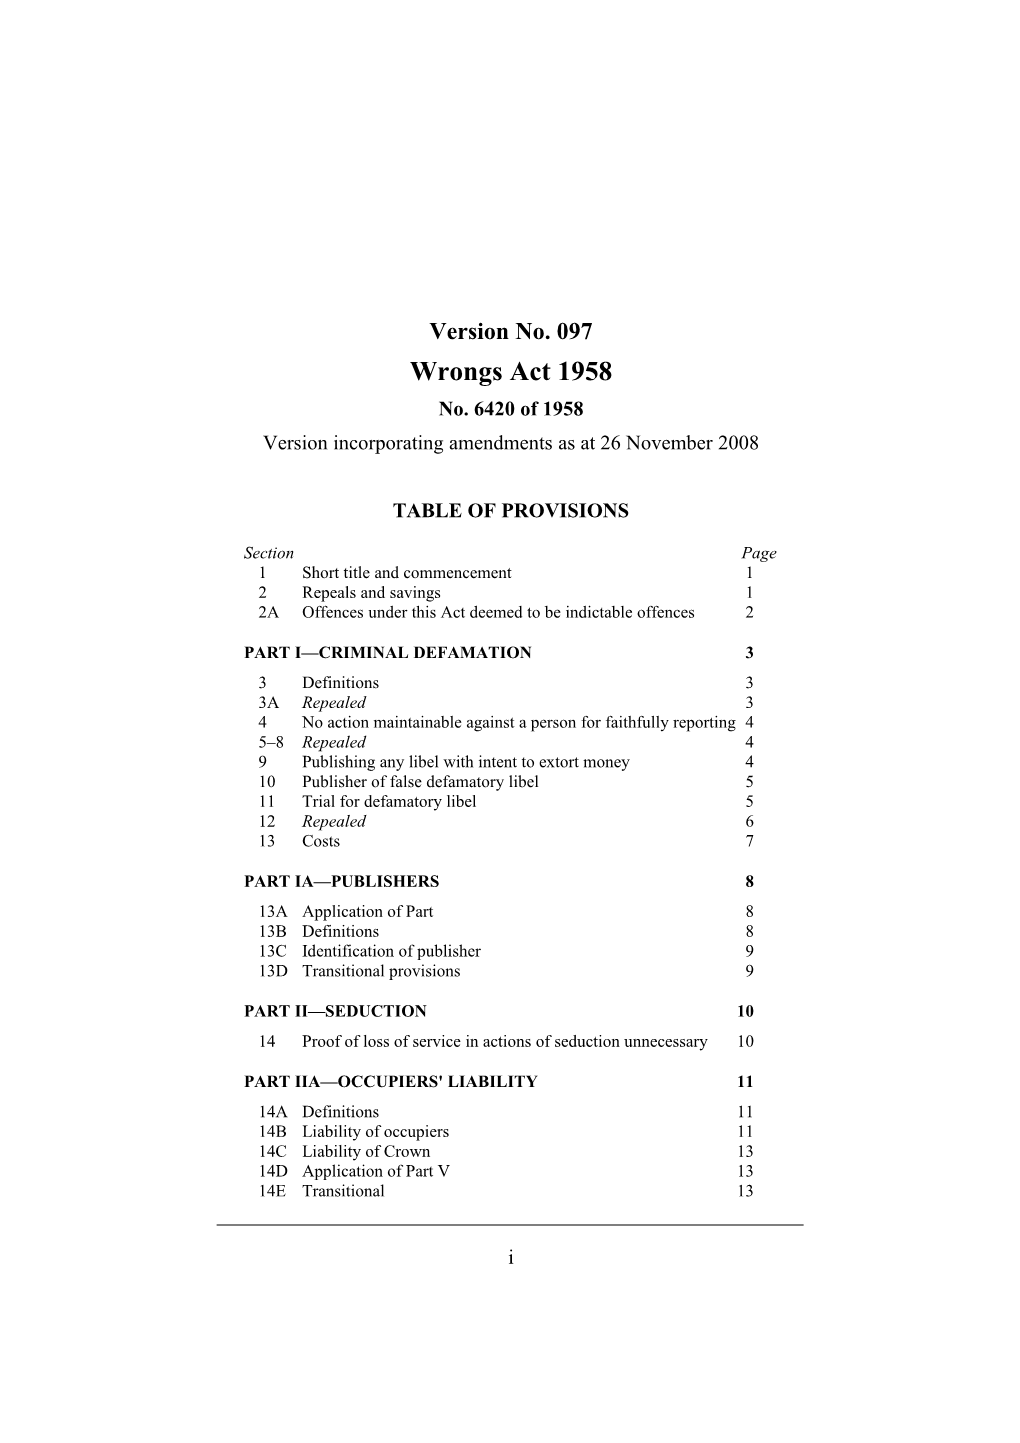 Version Incorporating Amendments As at 26 November 2008